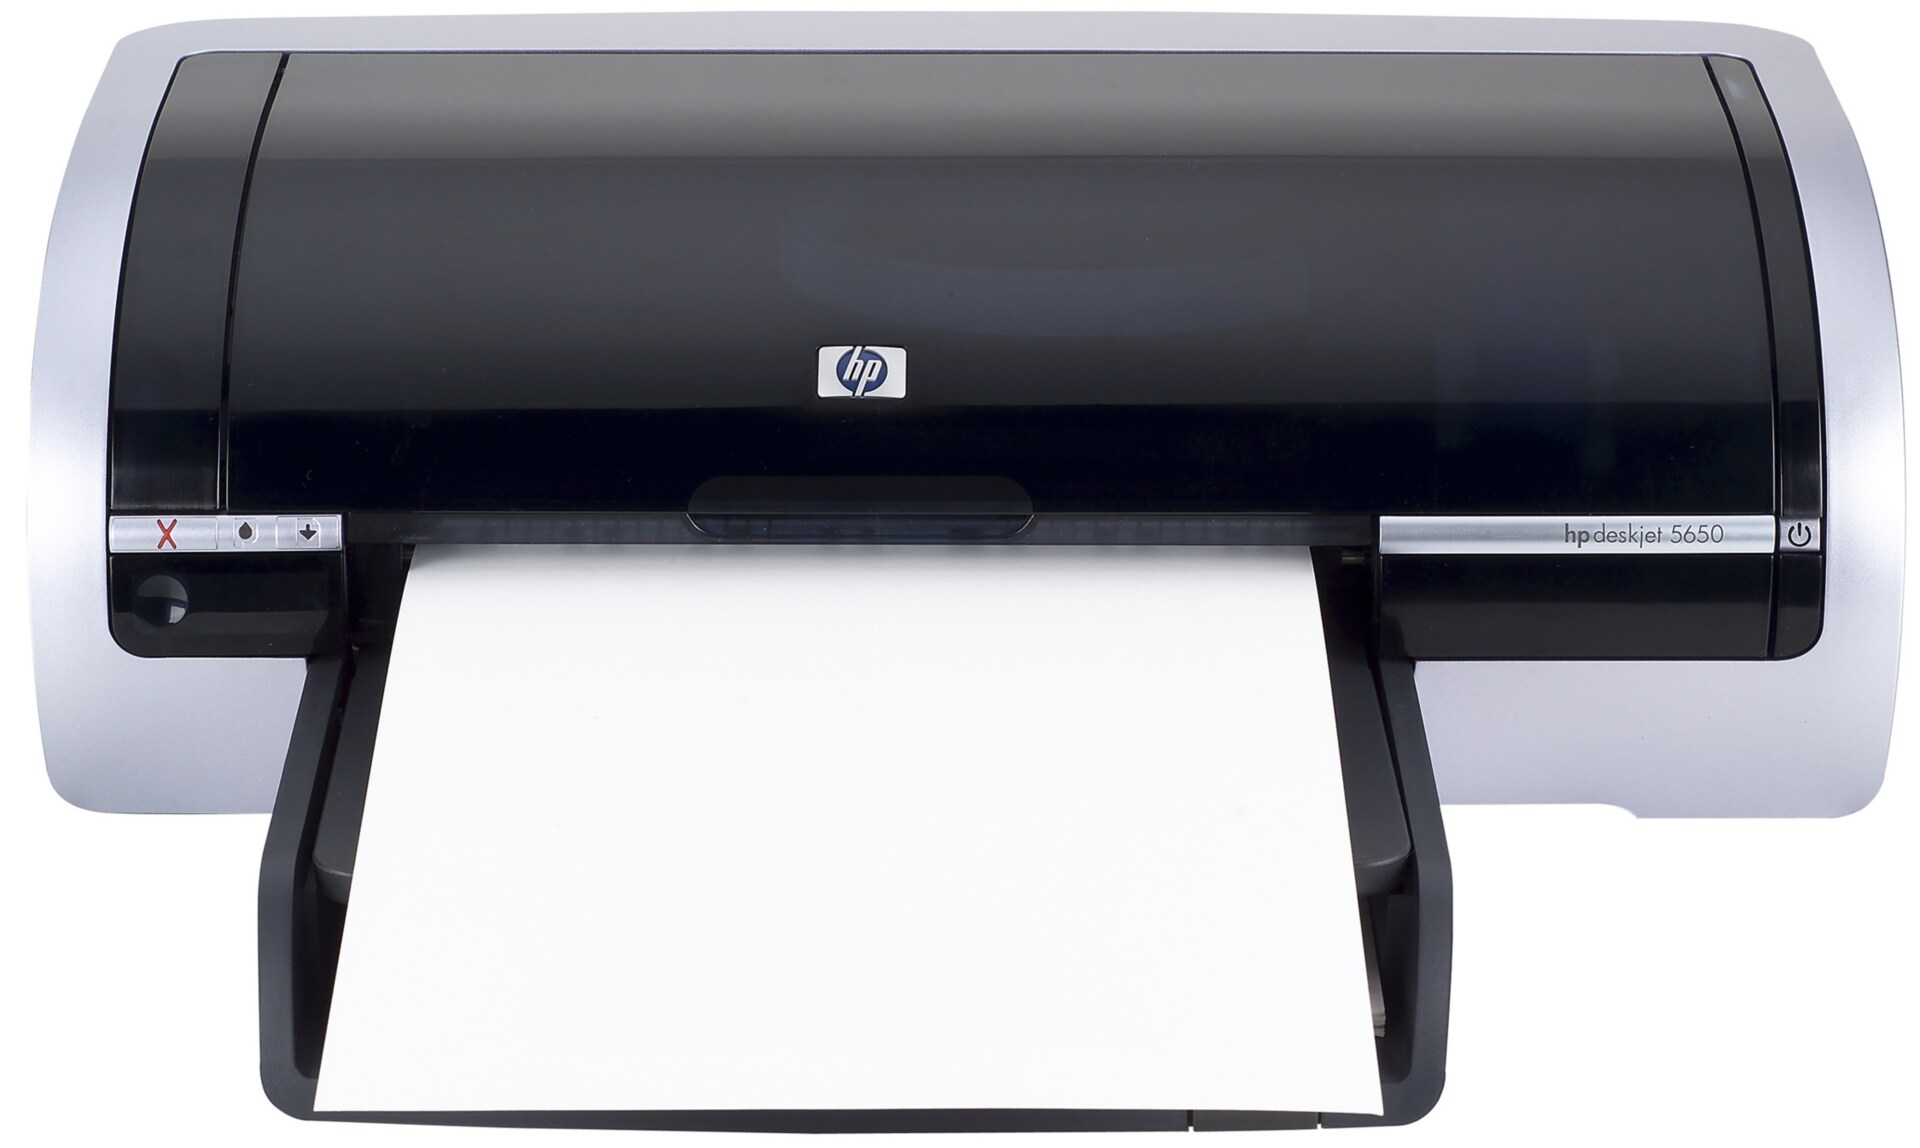 HP DeskJet 5650 - printer - color - ink-jet